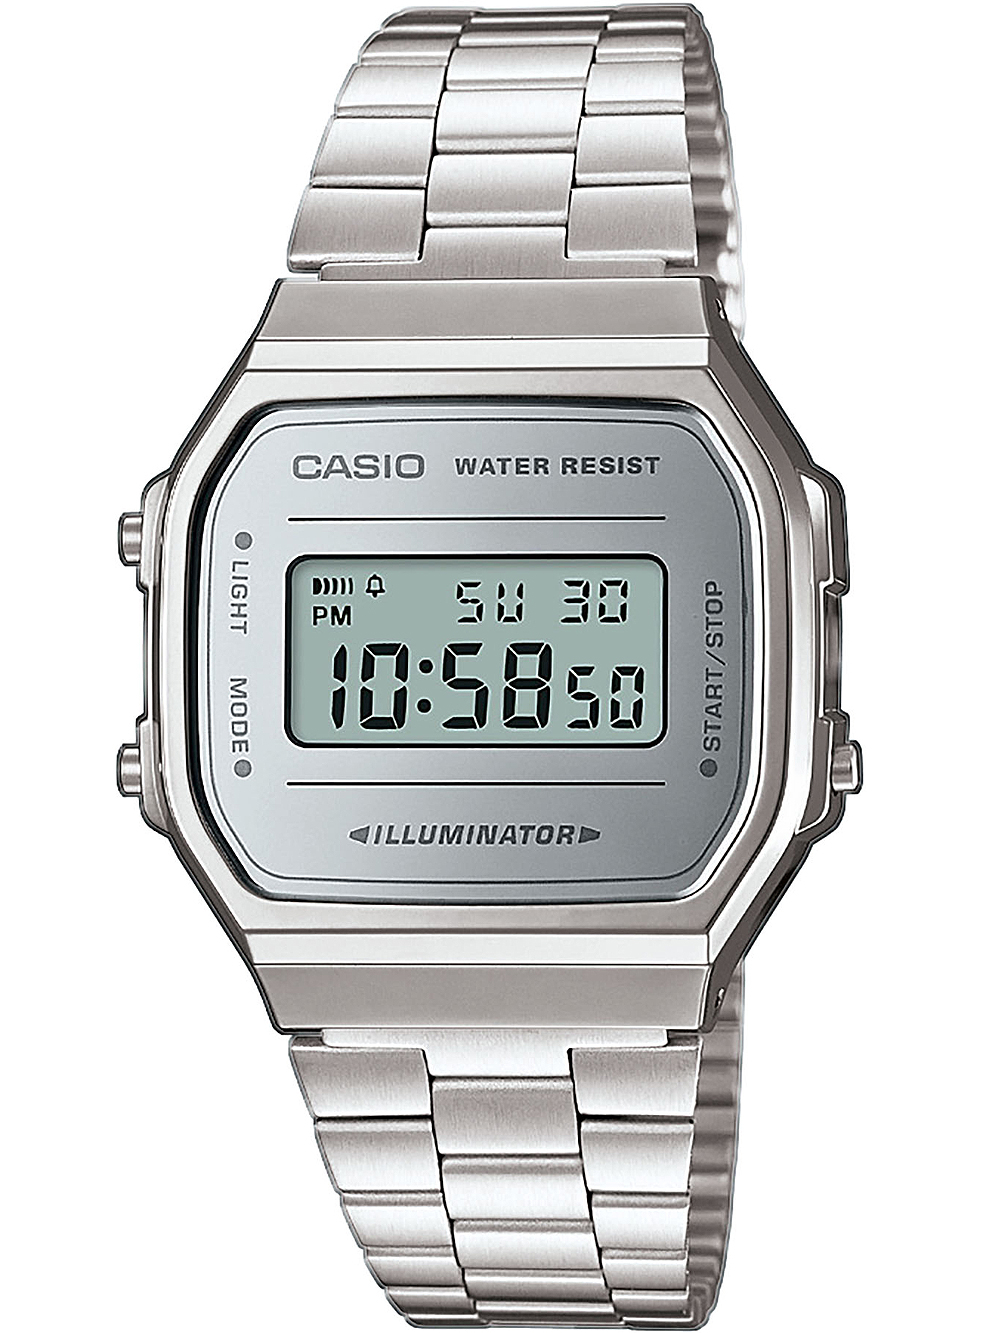 CASIO Uhren: günstig kaufen, portofrei & schnell erhalten!